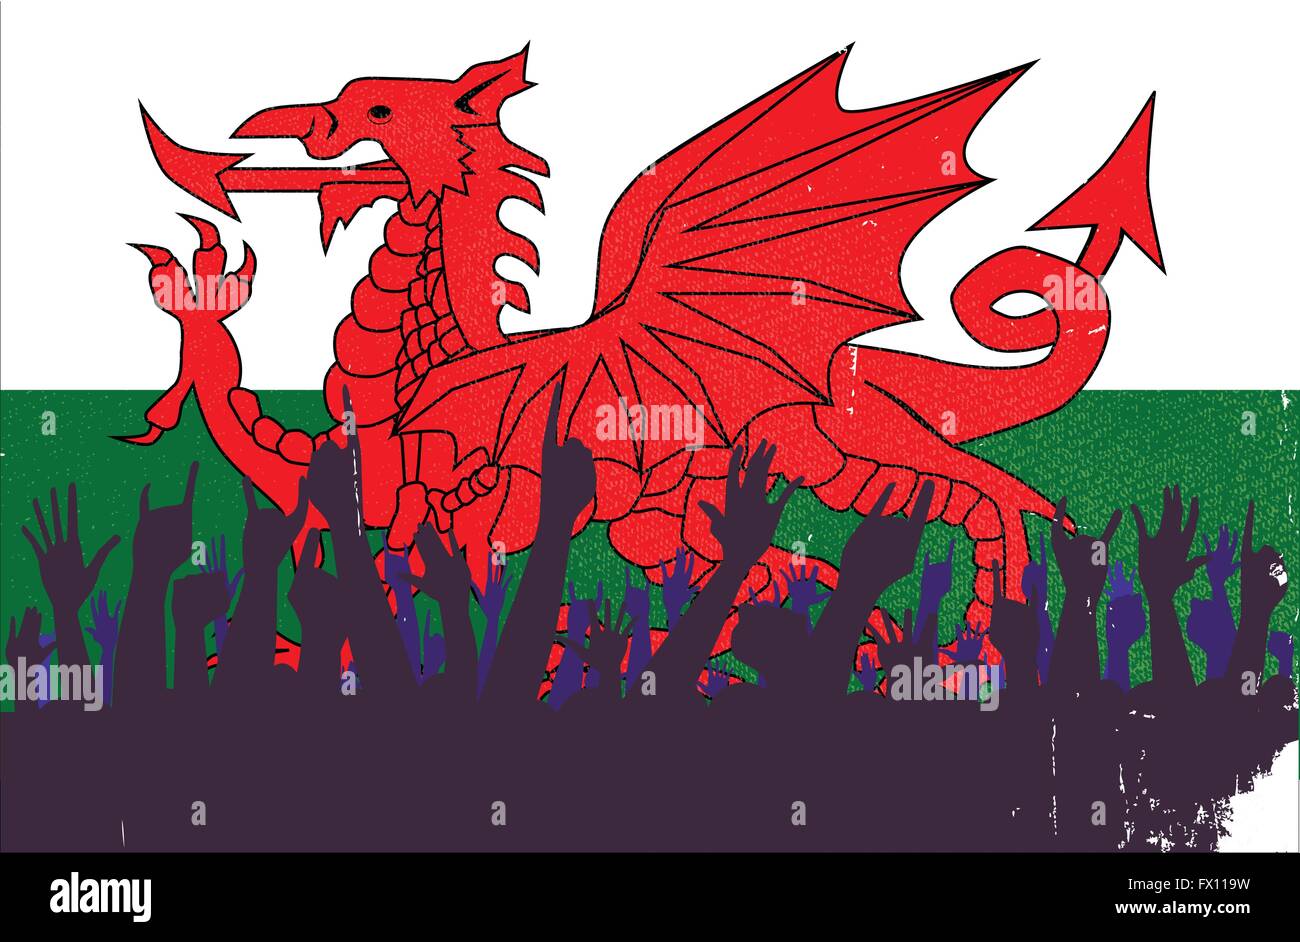 Publikumsreaktionen zufrieden mit dem walisischen Fahne Hintergrund Stock Vektor